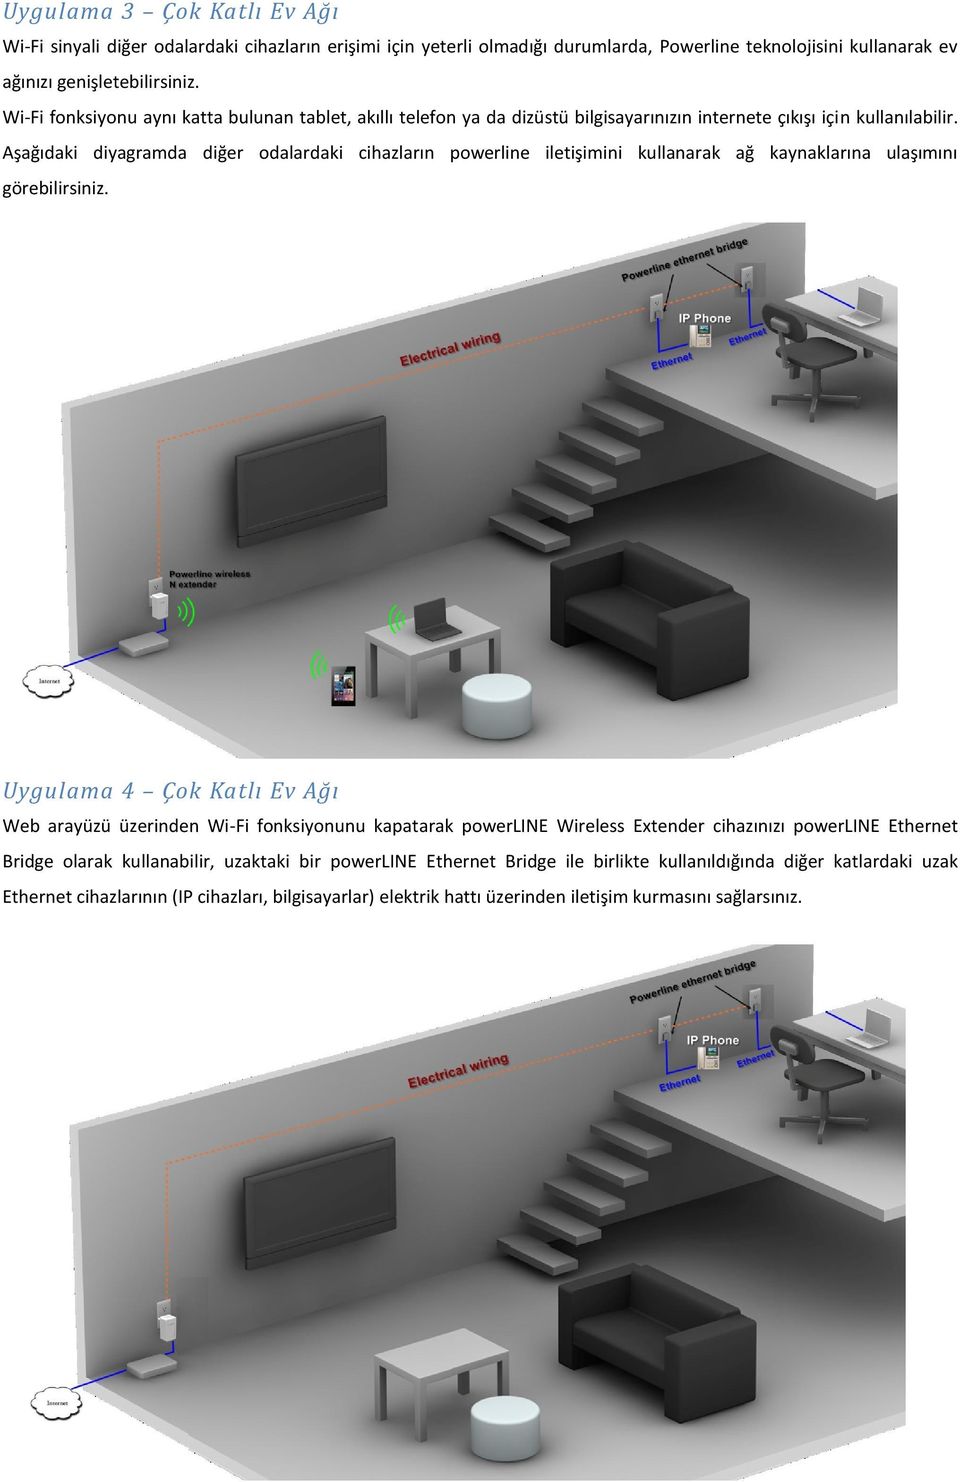 Aşağıdaki diyagramda diğer odalardaki cihazların powerline iletişimini kullanarak ağ kaynaklarına ulaşımını görebilirsiniz.